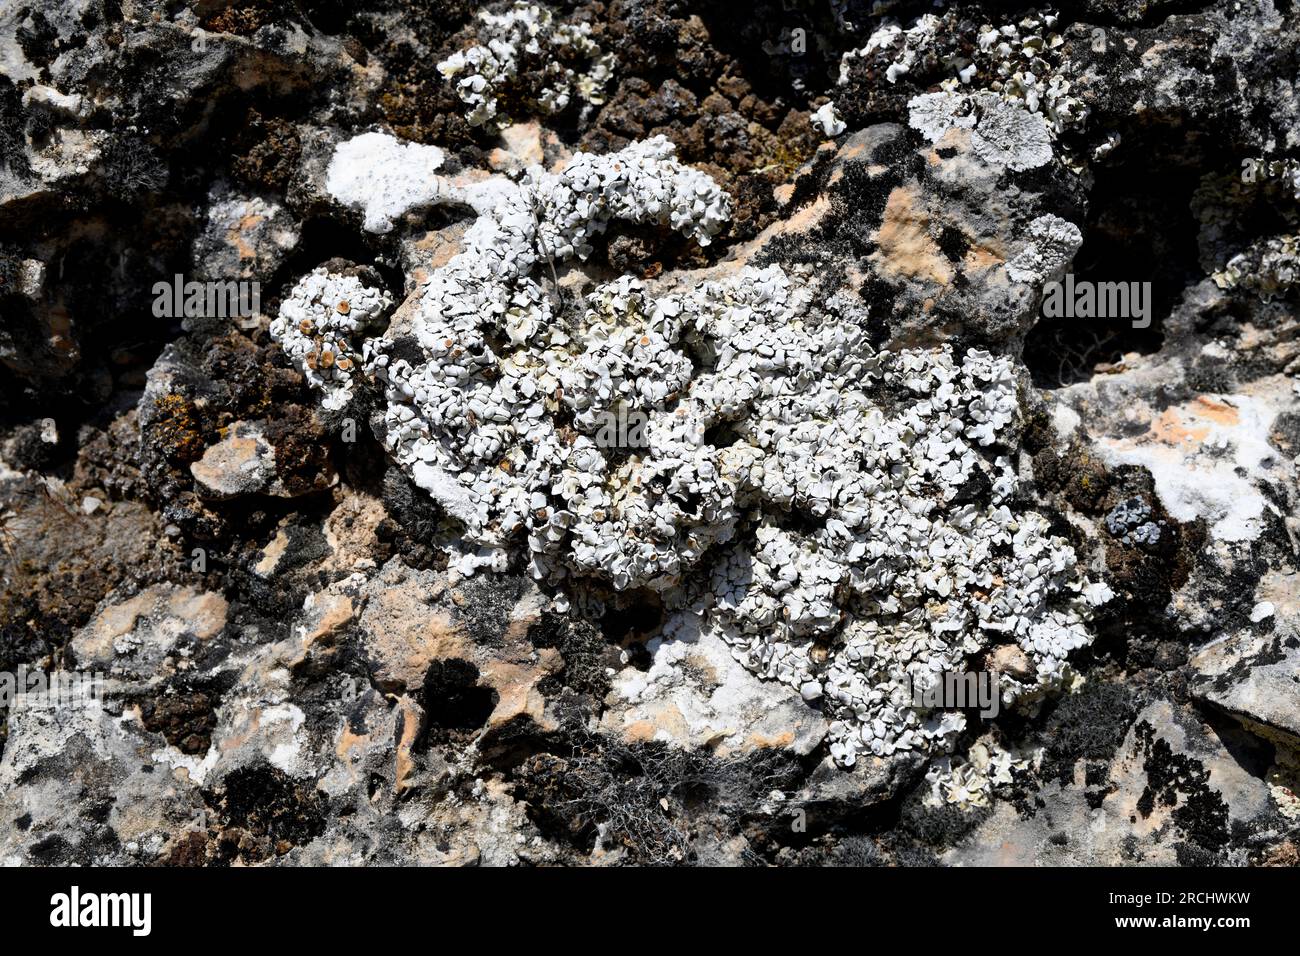 Squamarina lentigera is a squamulose lichen that grows on calcareous rocks. This photo was taken in Serranía de Cuenca, Castilla-La Mancha, Spain. Stock Photo